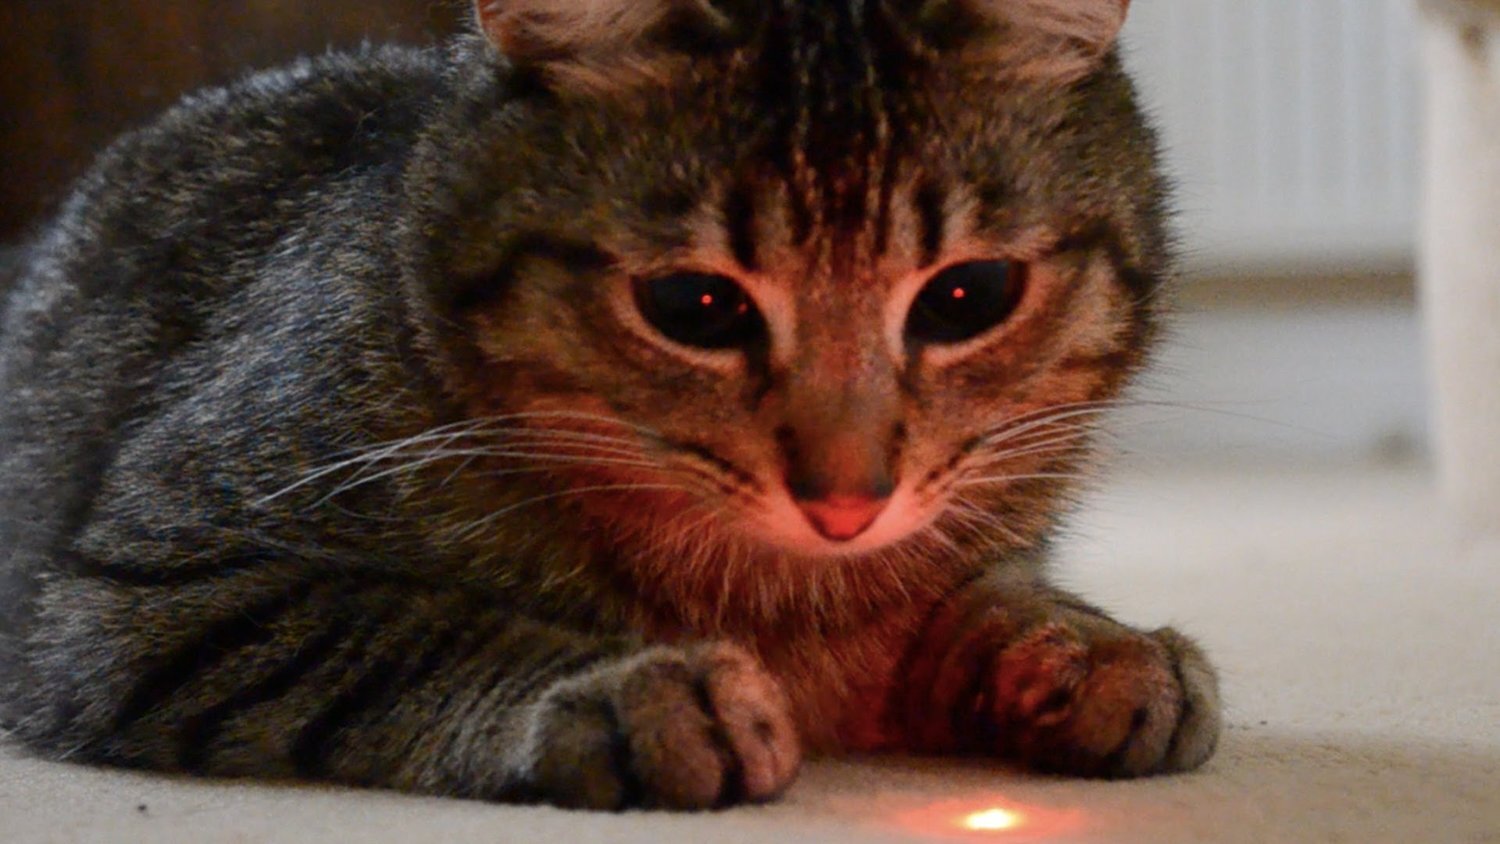 halı üstündeki lazer ışığına kitlenmiş kedi